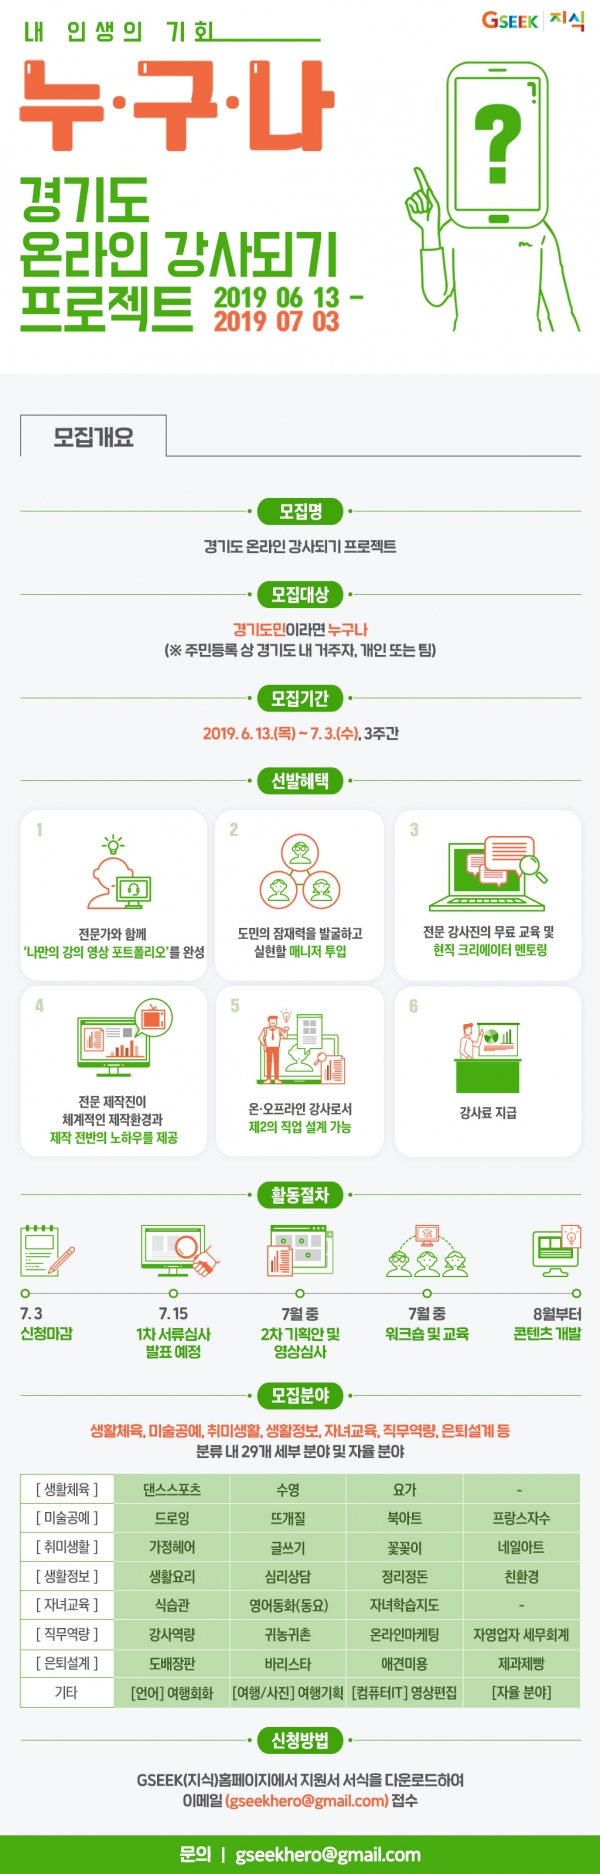 경기도 온라인 강사되기 프로젝트 상세내용 (자료출처 : 경기정책포털)